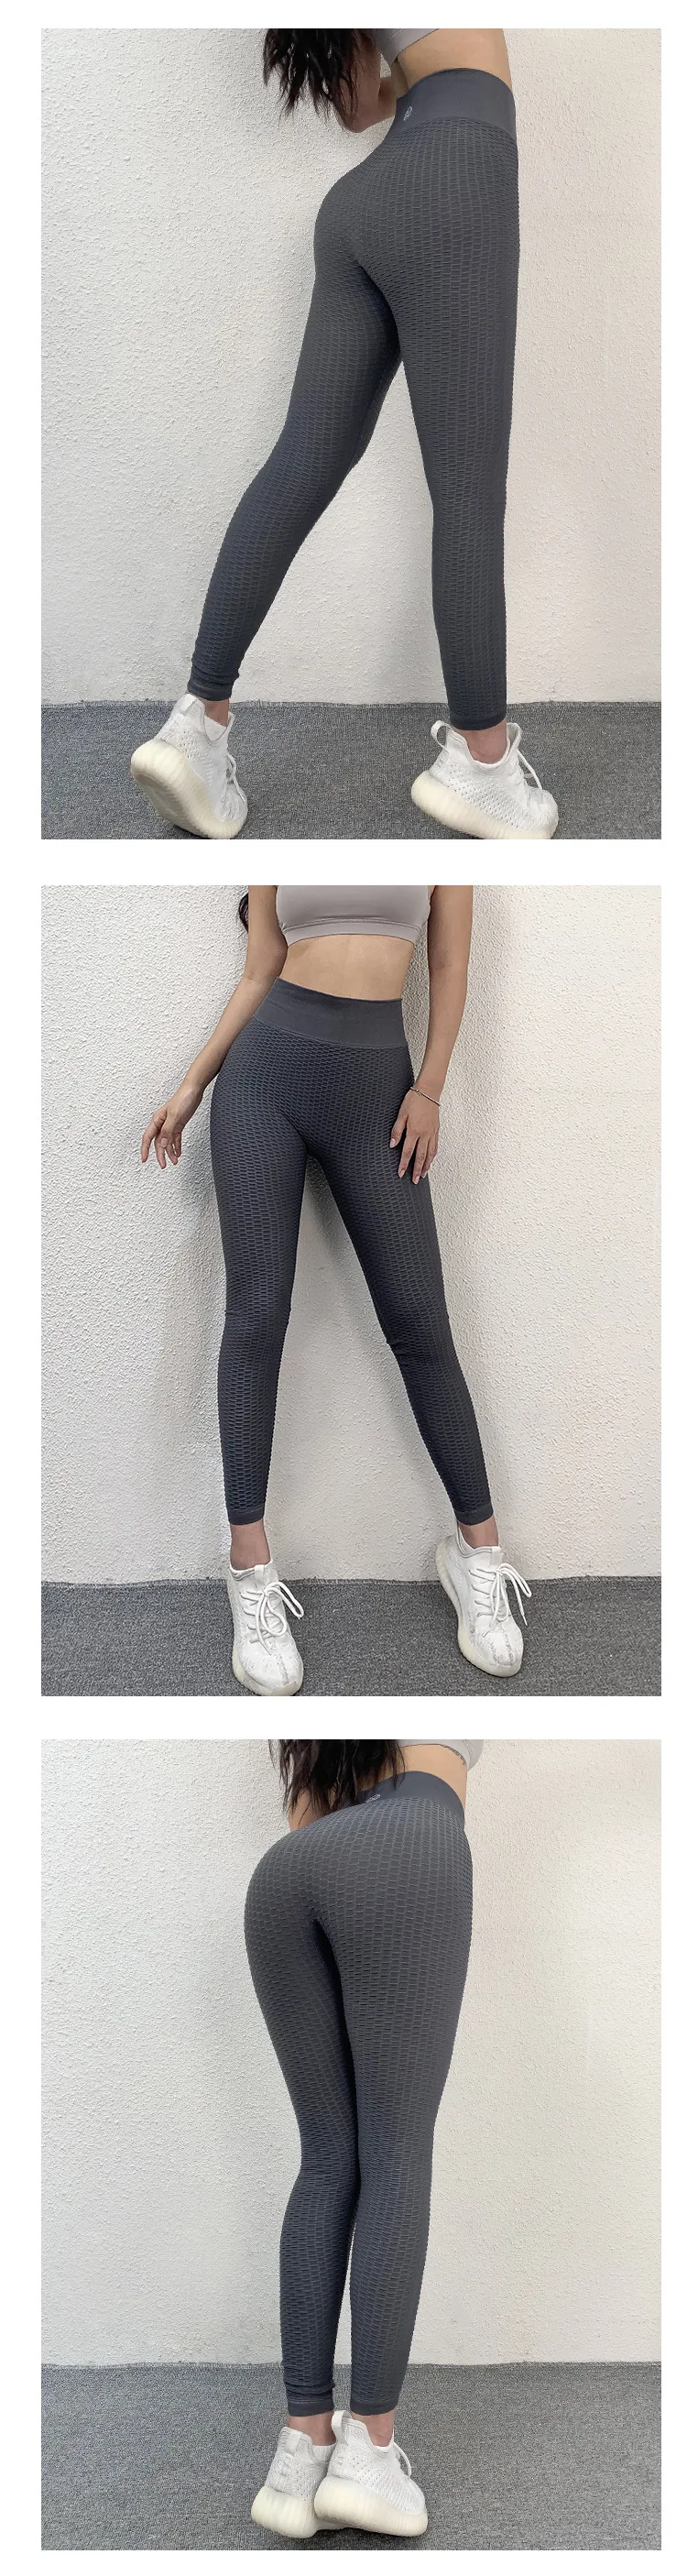 Для женщин быстросохнущая одежда для фитнеса Леггинсы пуш-ап штаны для йоги Высокая талия спортивные брюки тренировочные брюки эластичные спортивные колготки